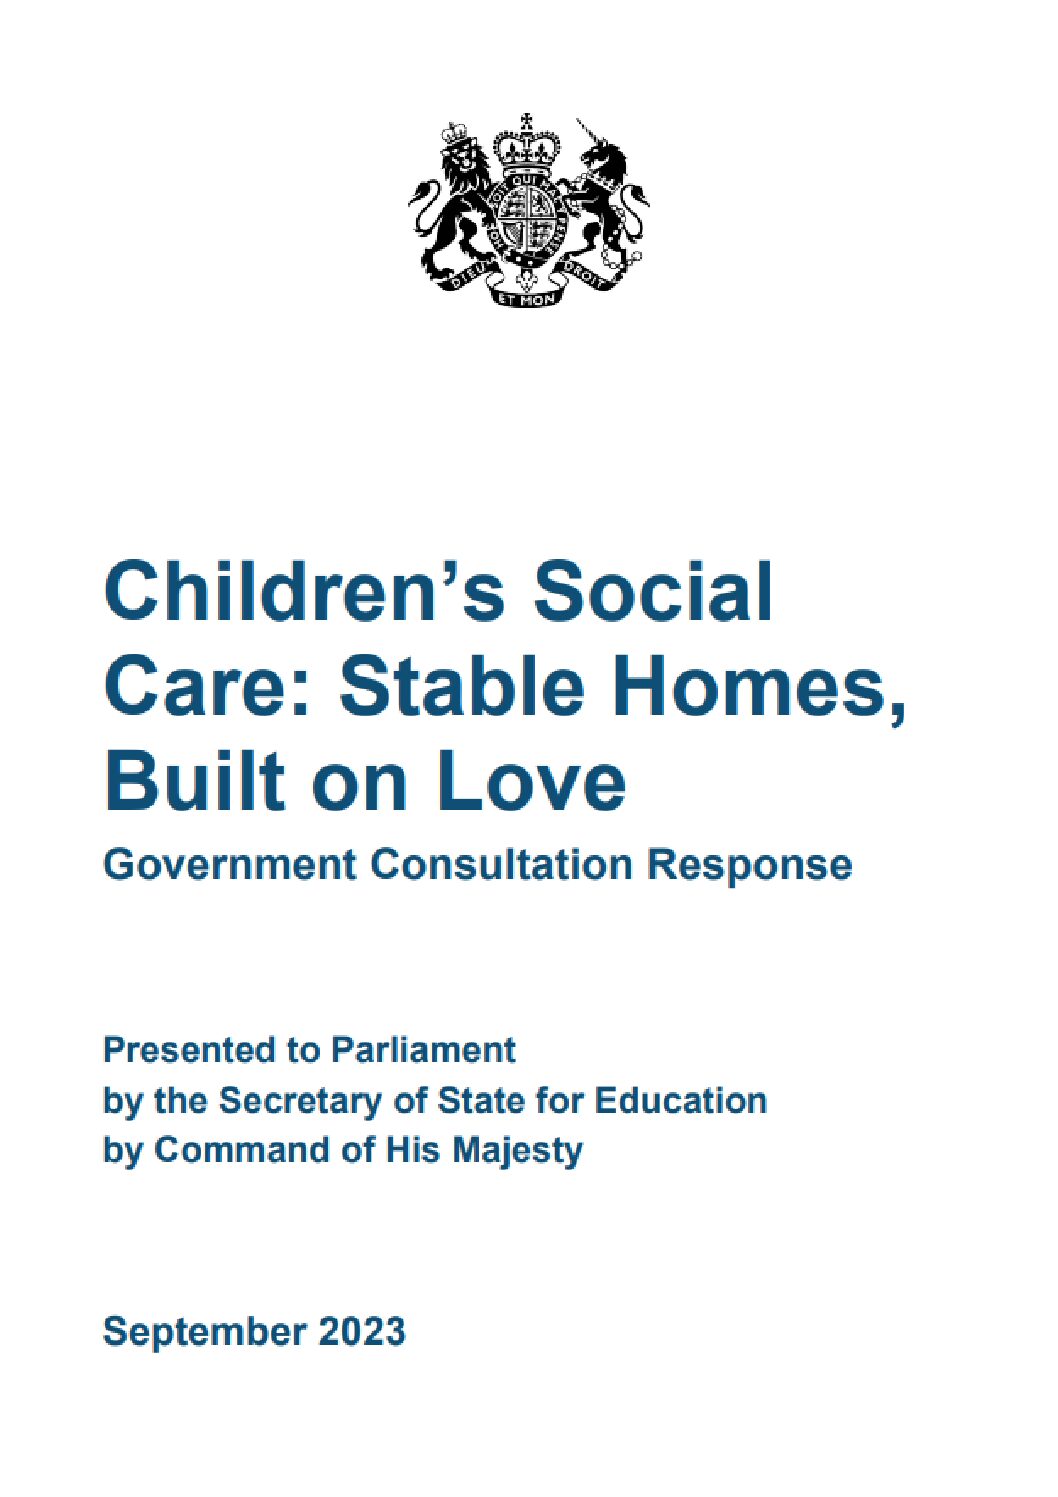 Children’s Social Care: Stable Homes, Built on Love consultation response